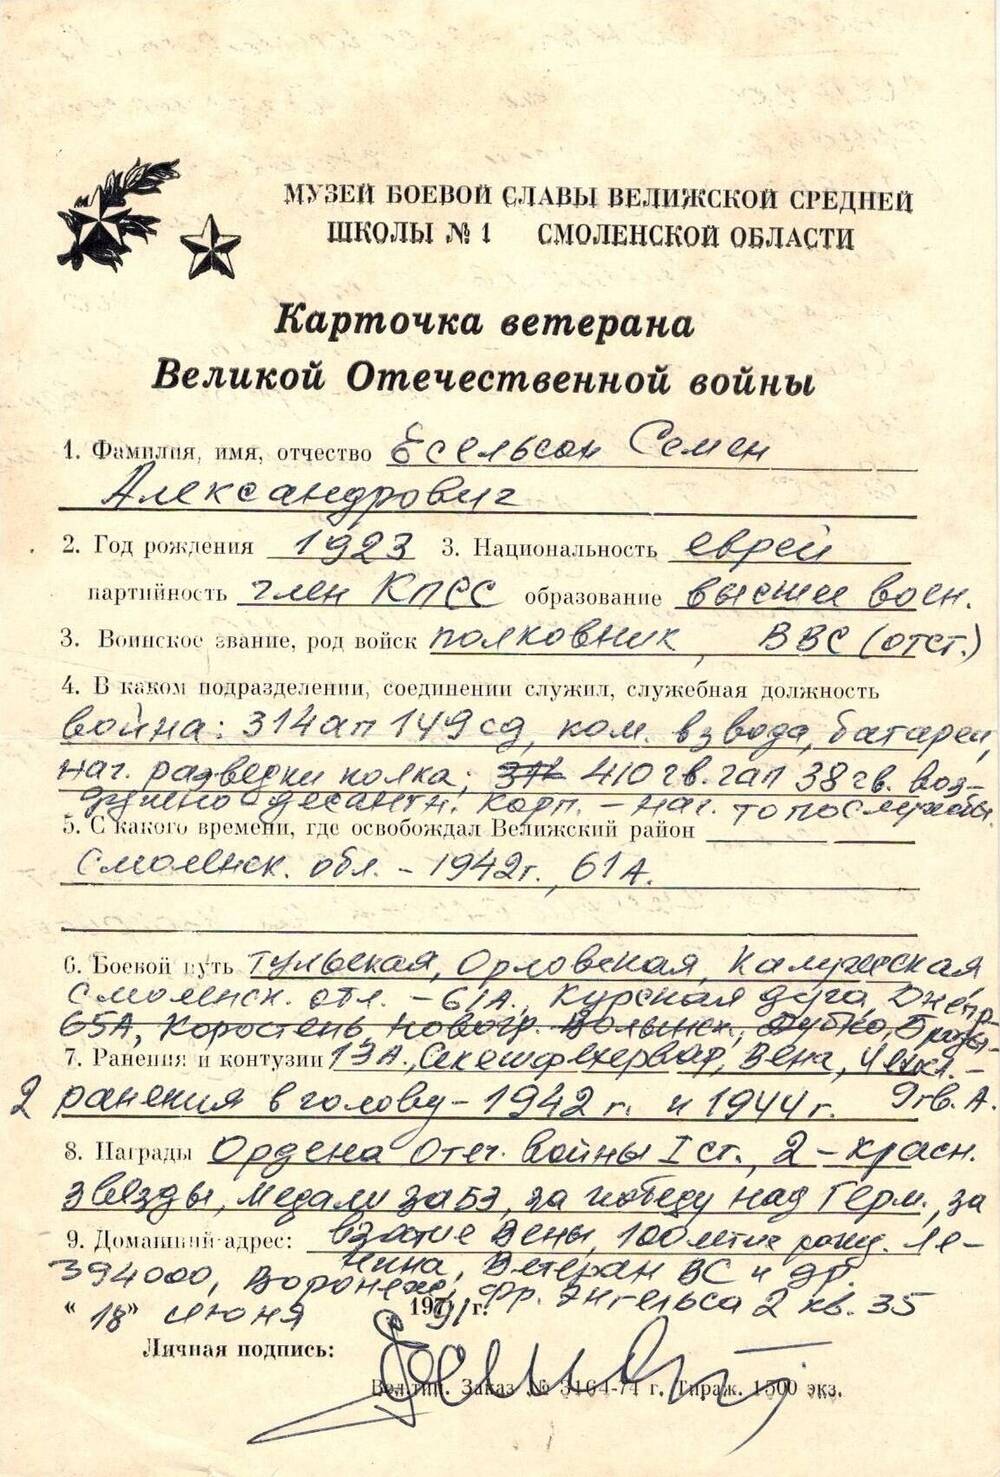 Карточка ветерана Великой Отечественной войны Есельсон Семен Александрович